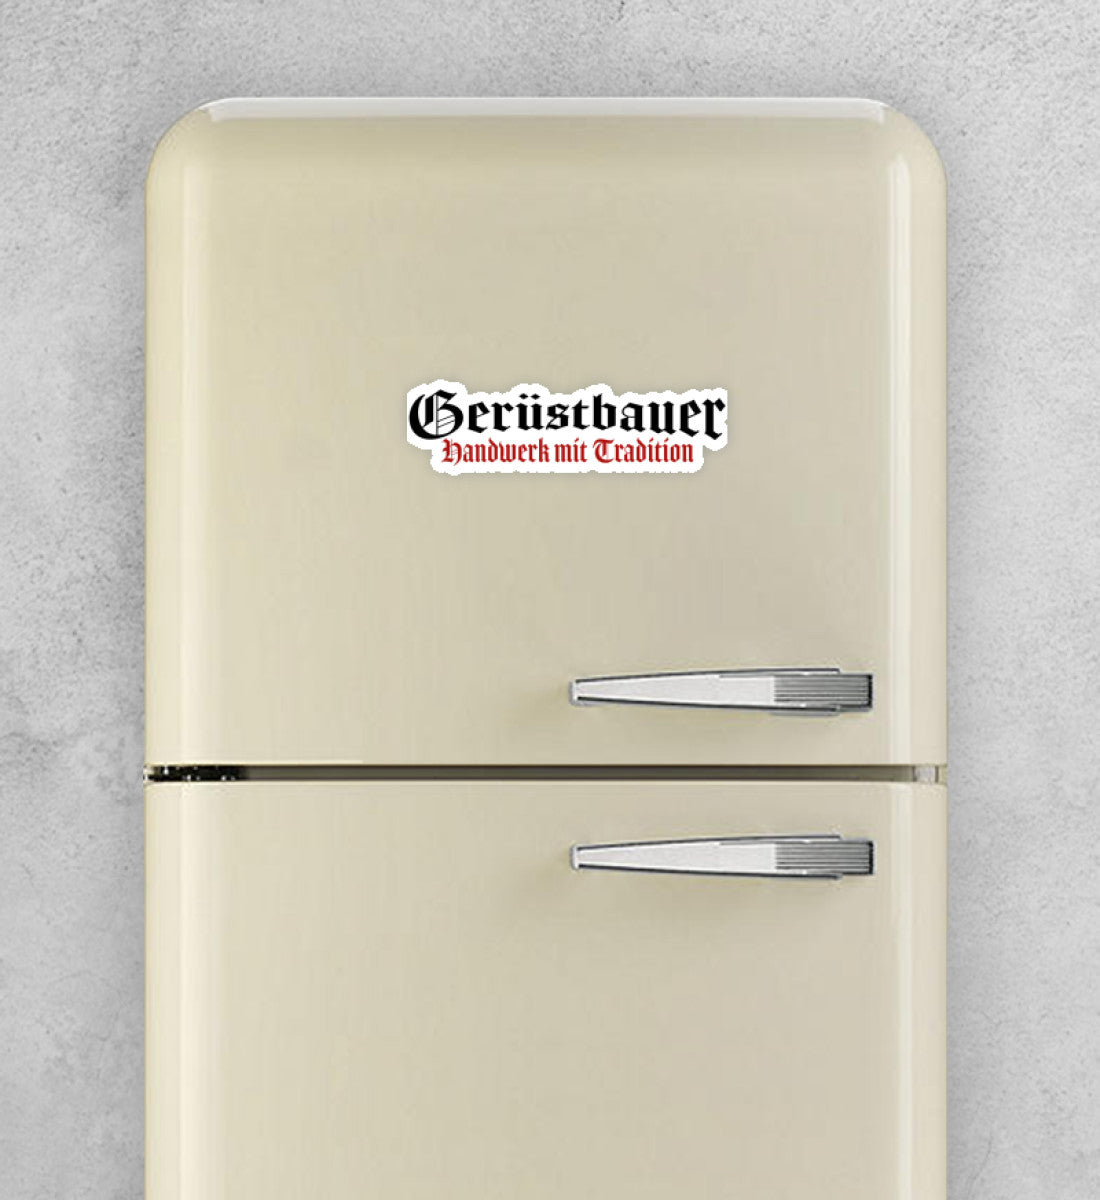 Gerüstbauer Handwerk mit Tradition  - Sticker €9.95 Gerüstbauer - Shop >>